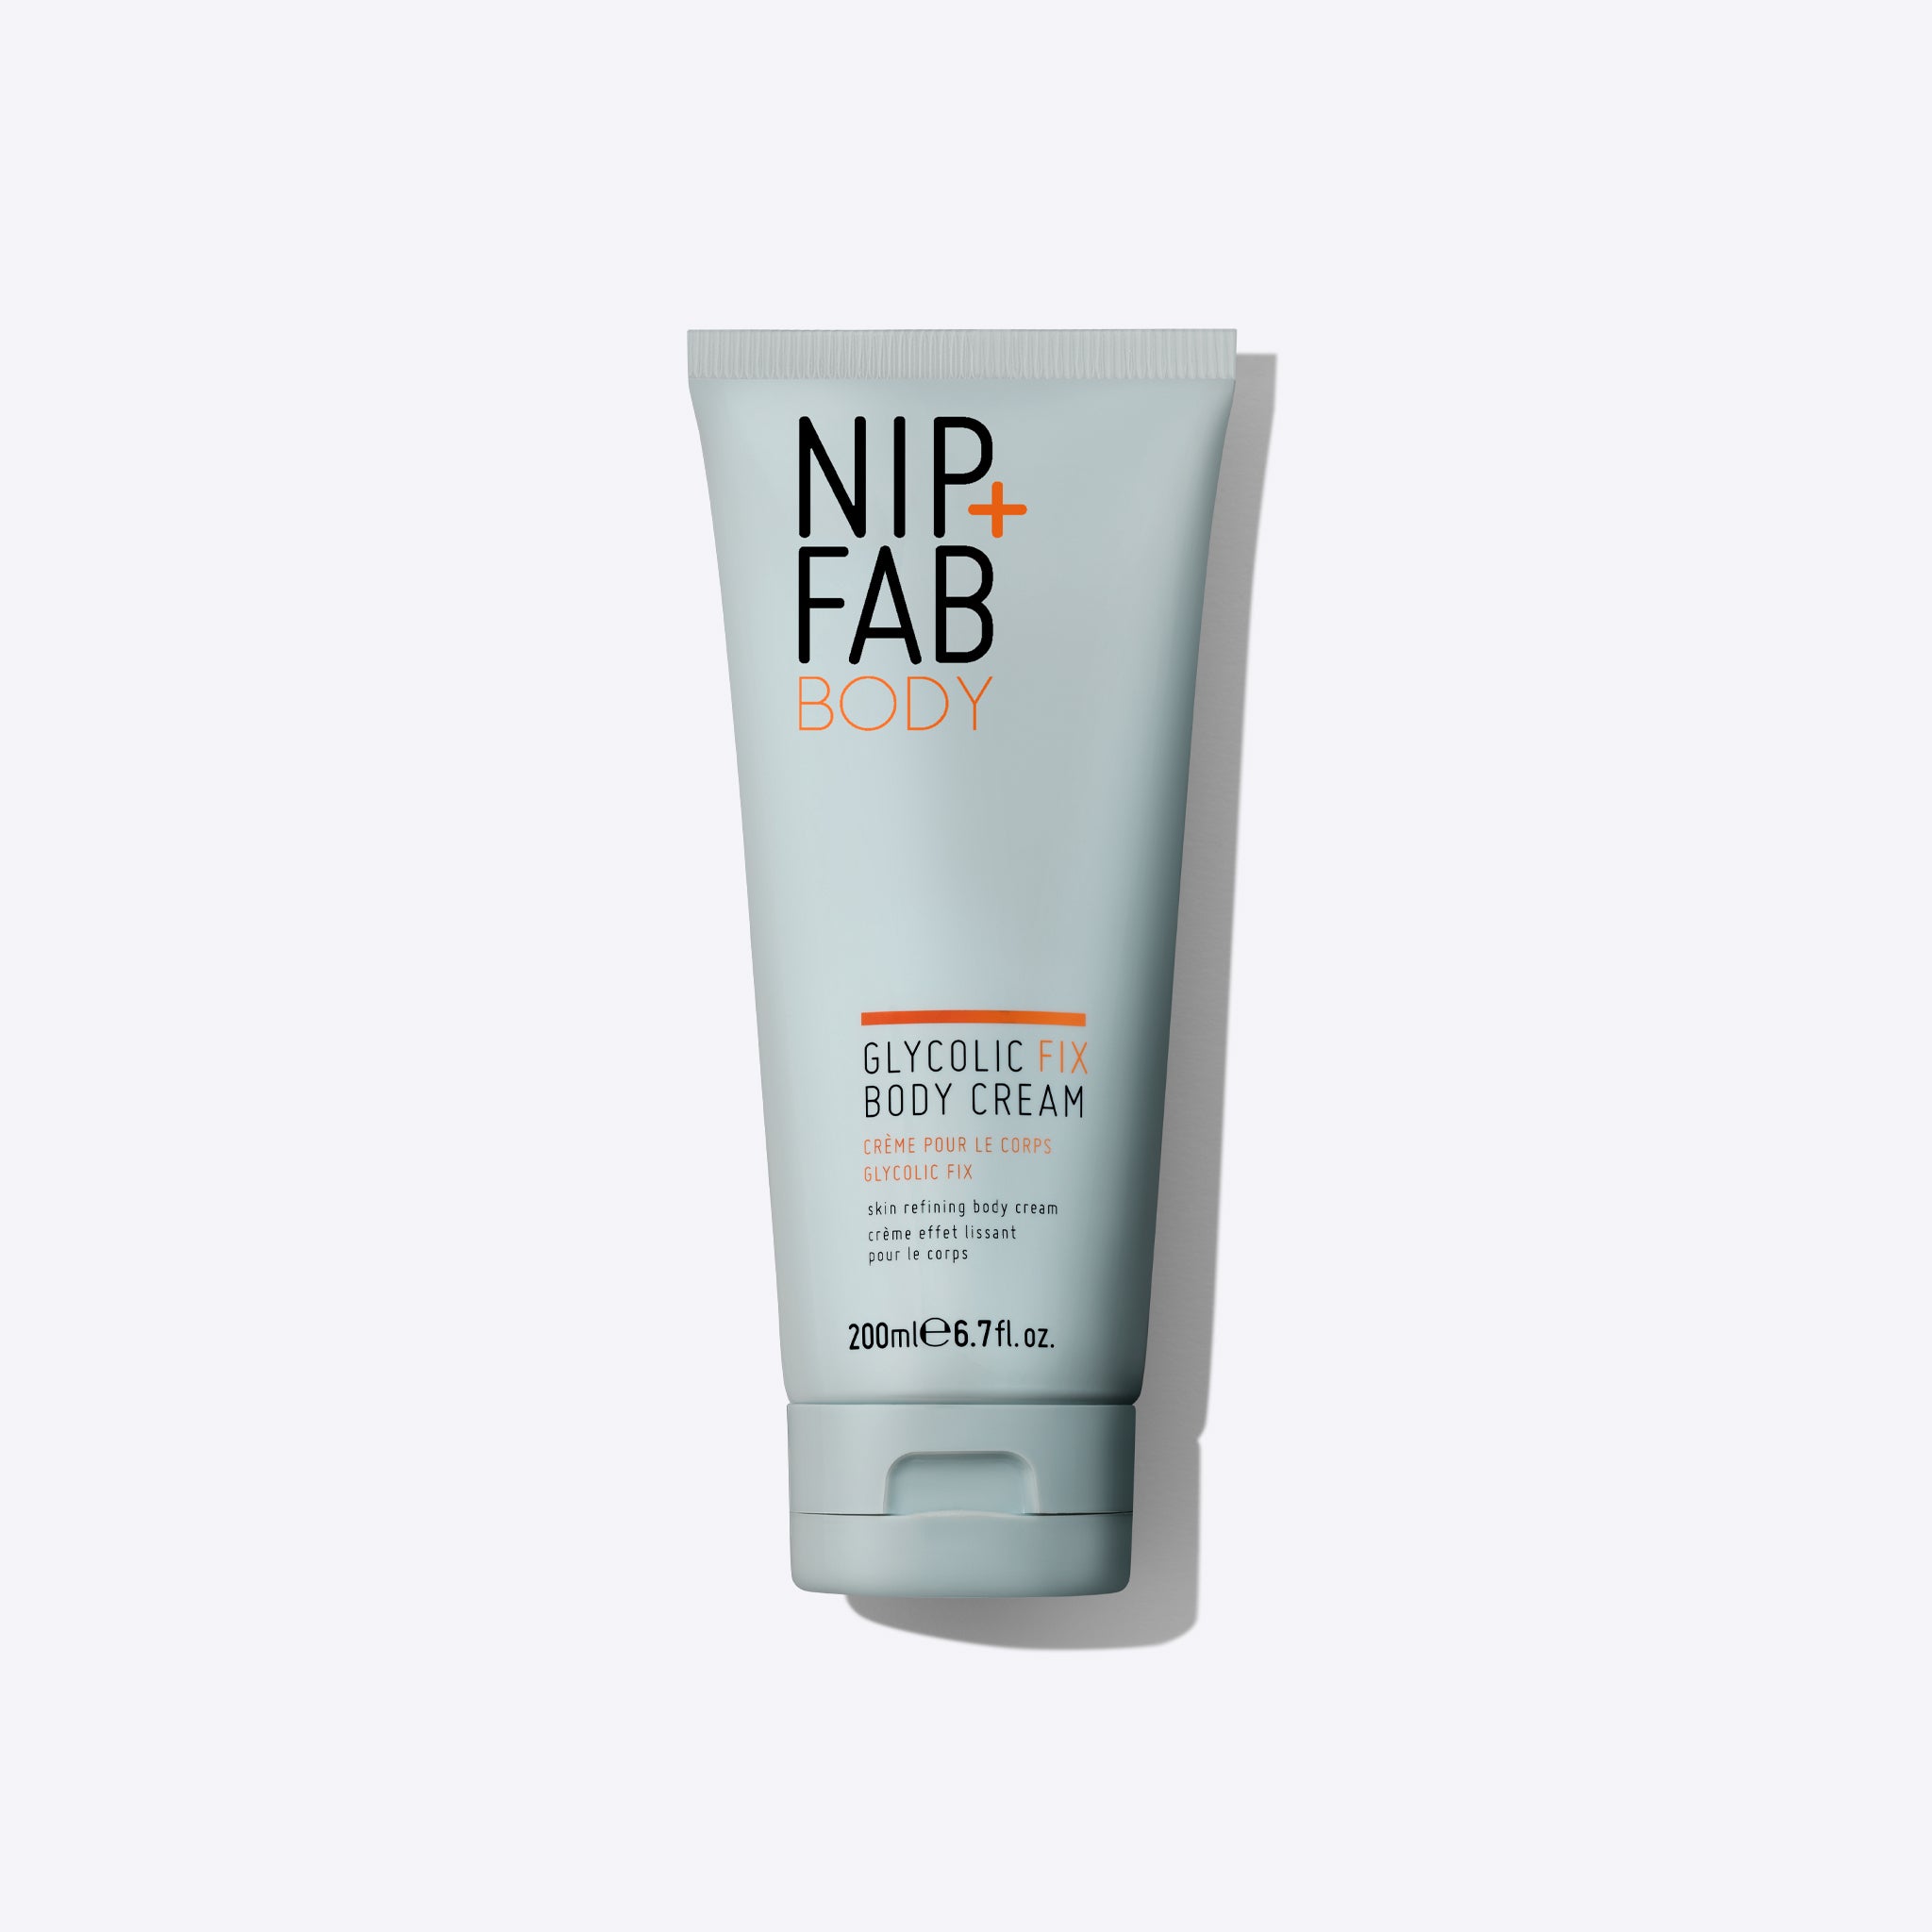 A nip  fab Glycolic Fix Body Cream